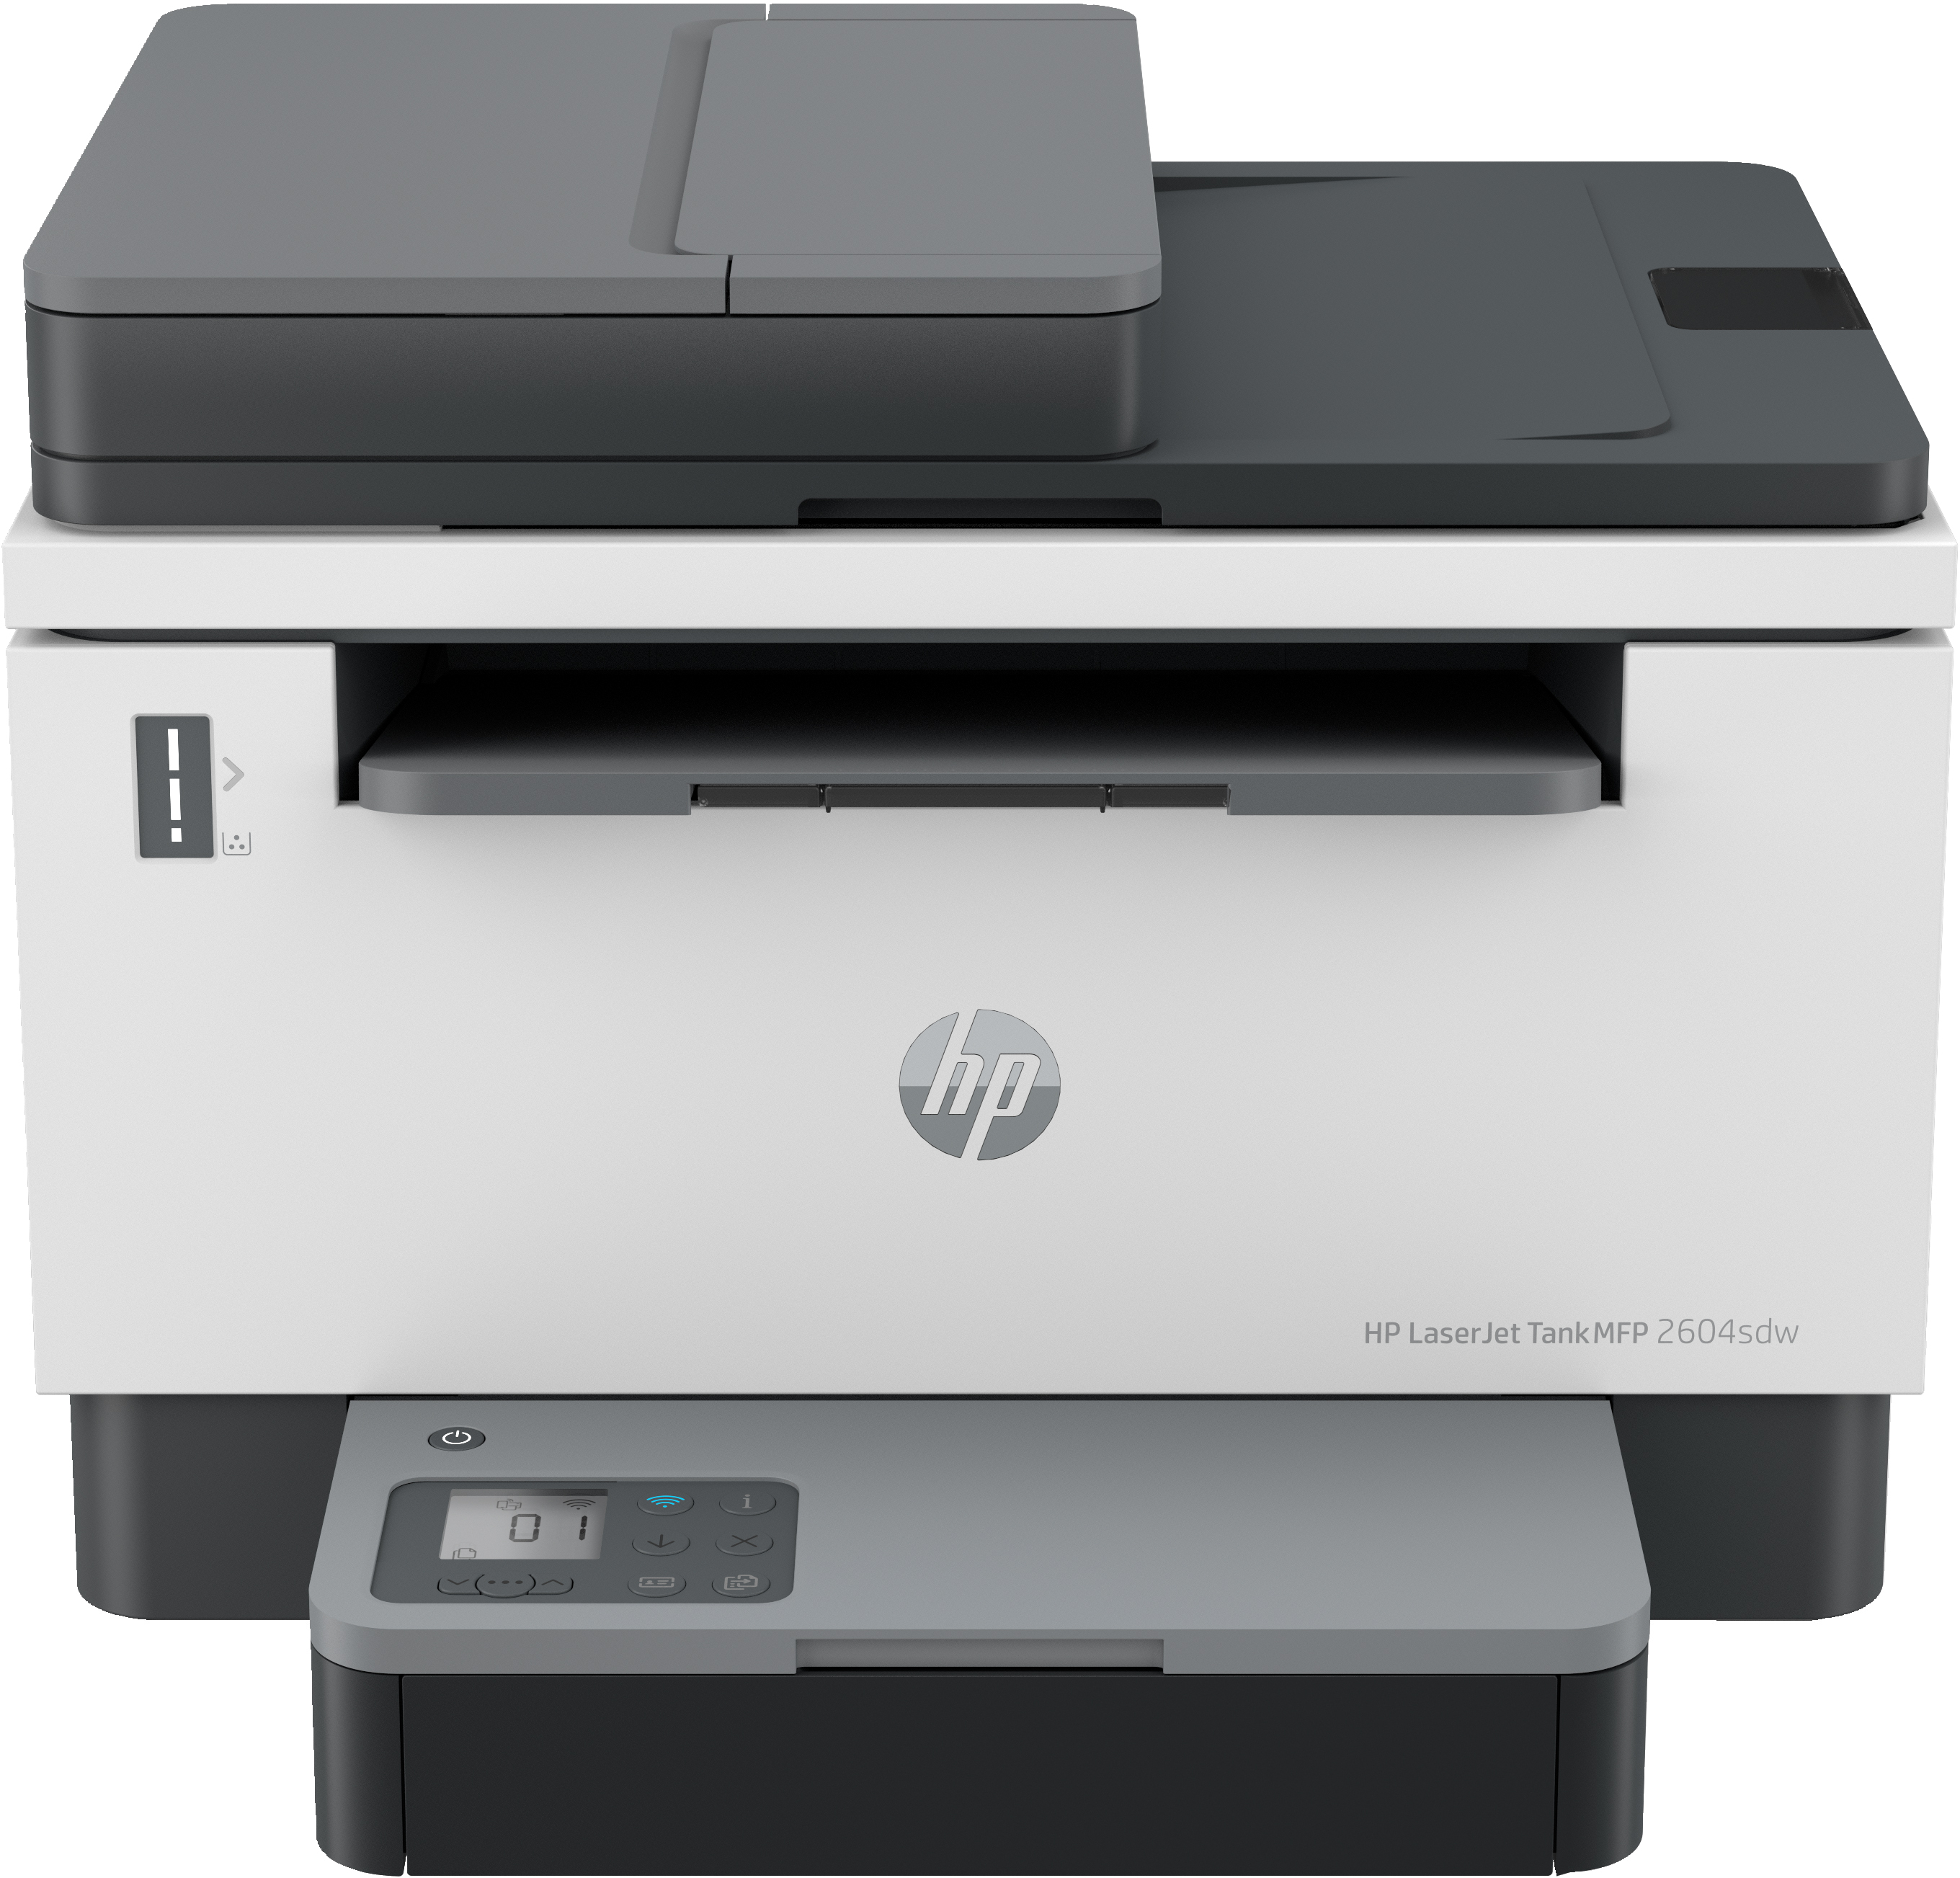 HP HP LaserJet Tank MFP 2604sdw printer, Zwart-wit, Printer voor Bedrijf, Dubbelzijdig printen; Scannen naar e-mail; Scannen naar pdf